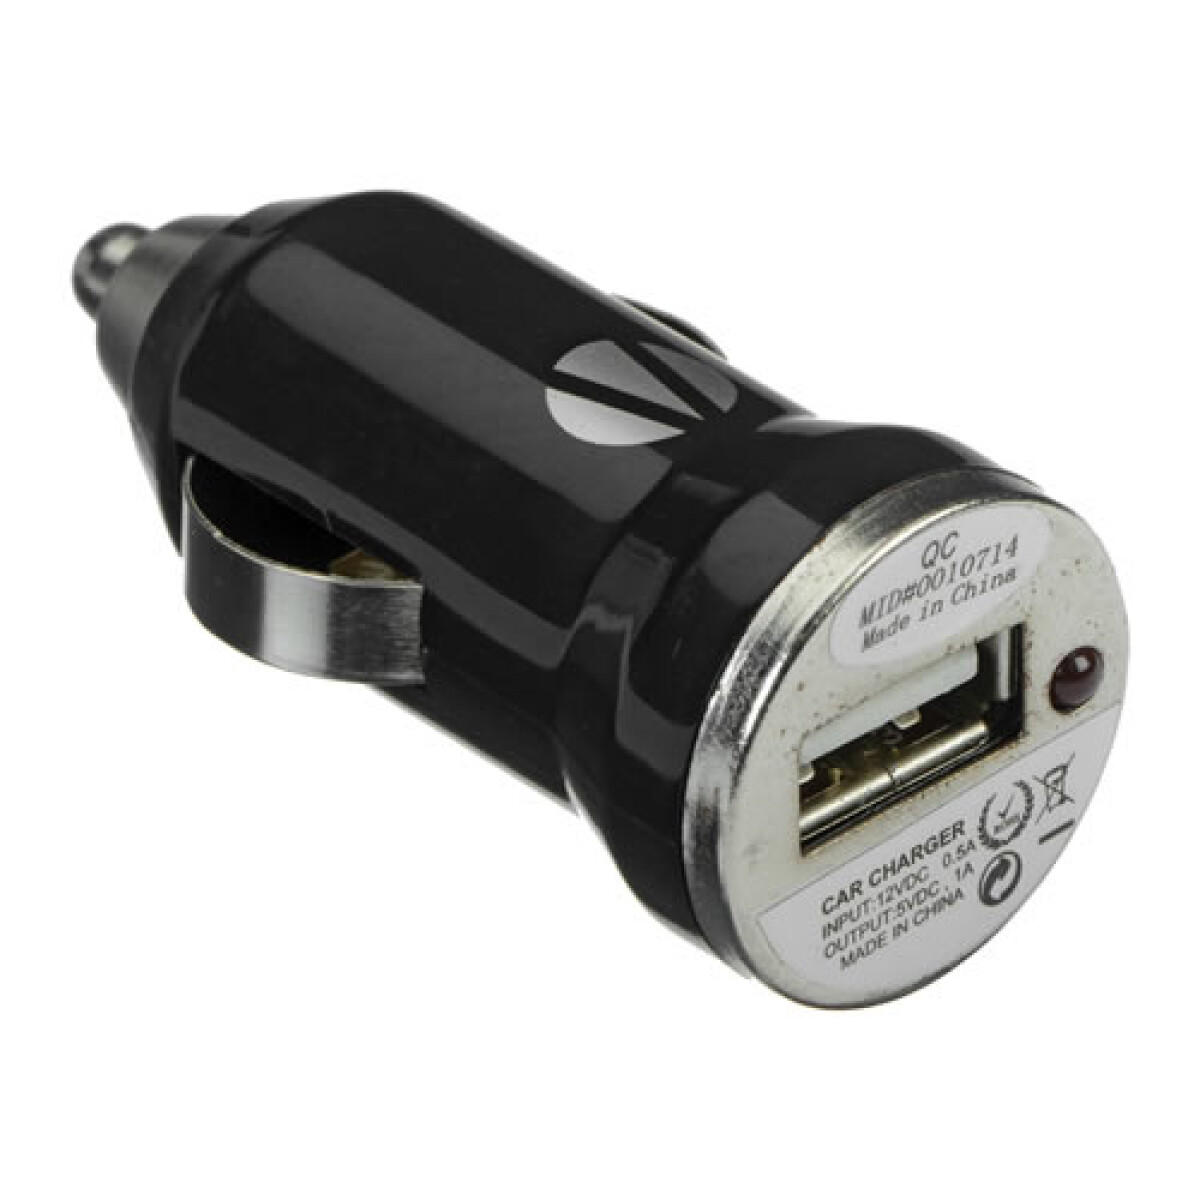 Cargador USB 12v para auto 